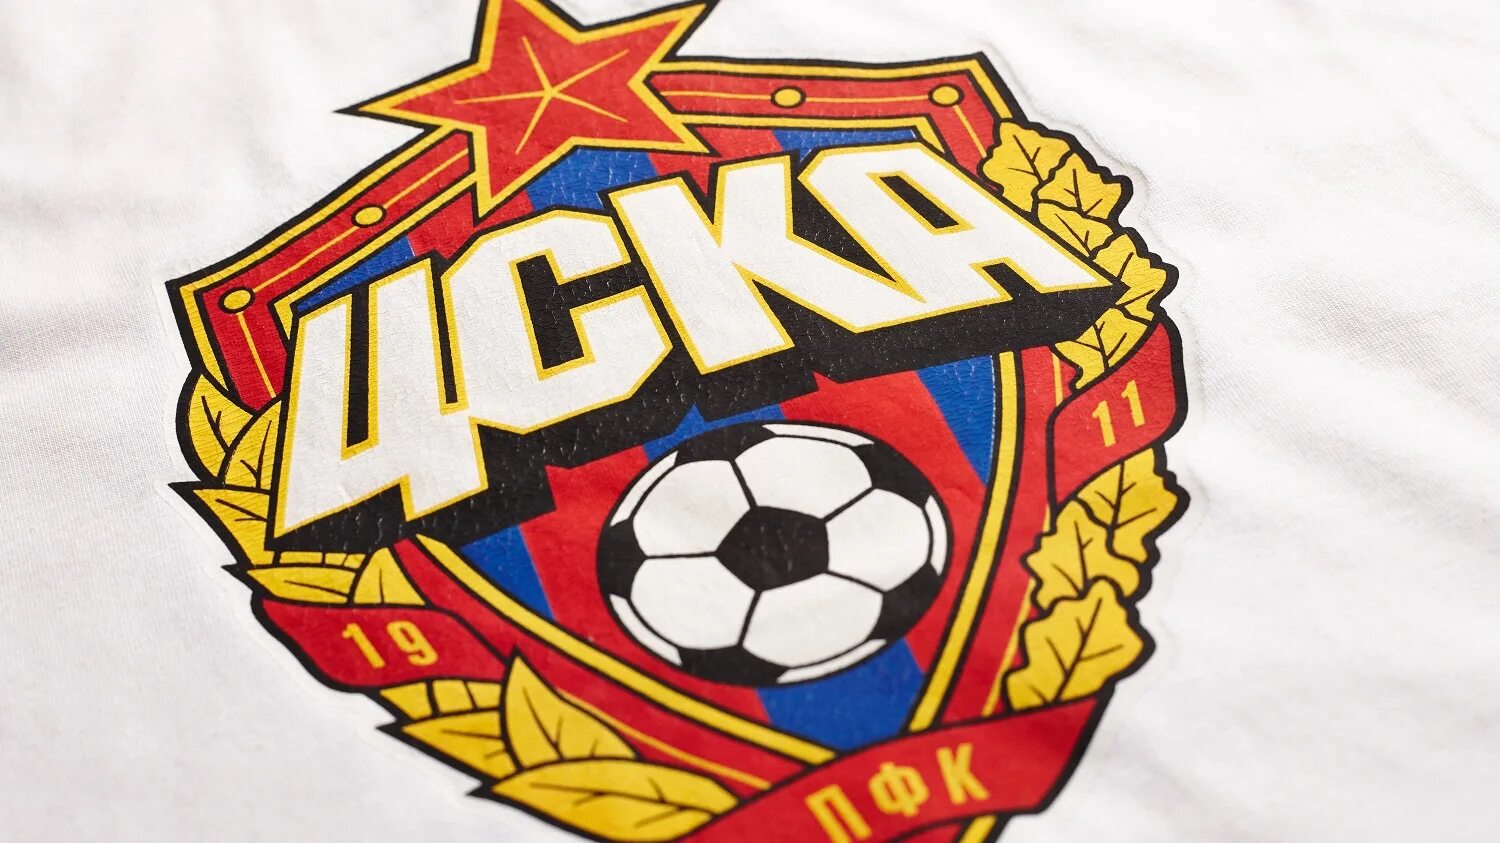 Fancy coloring of the CSKA logo